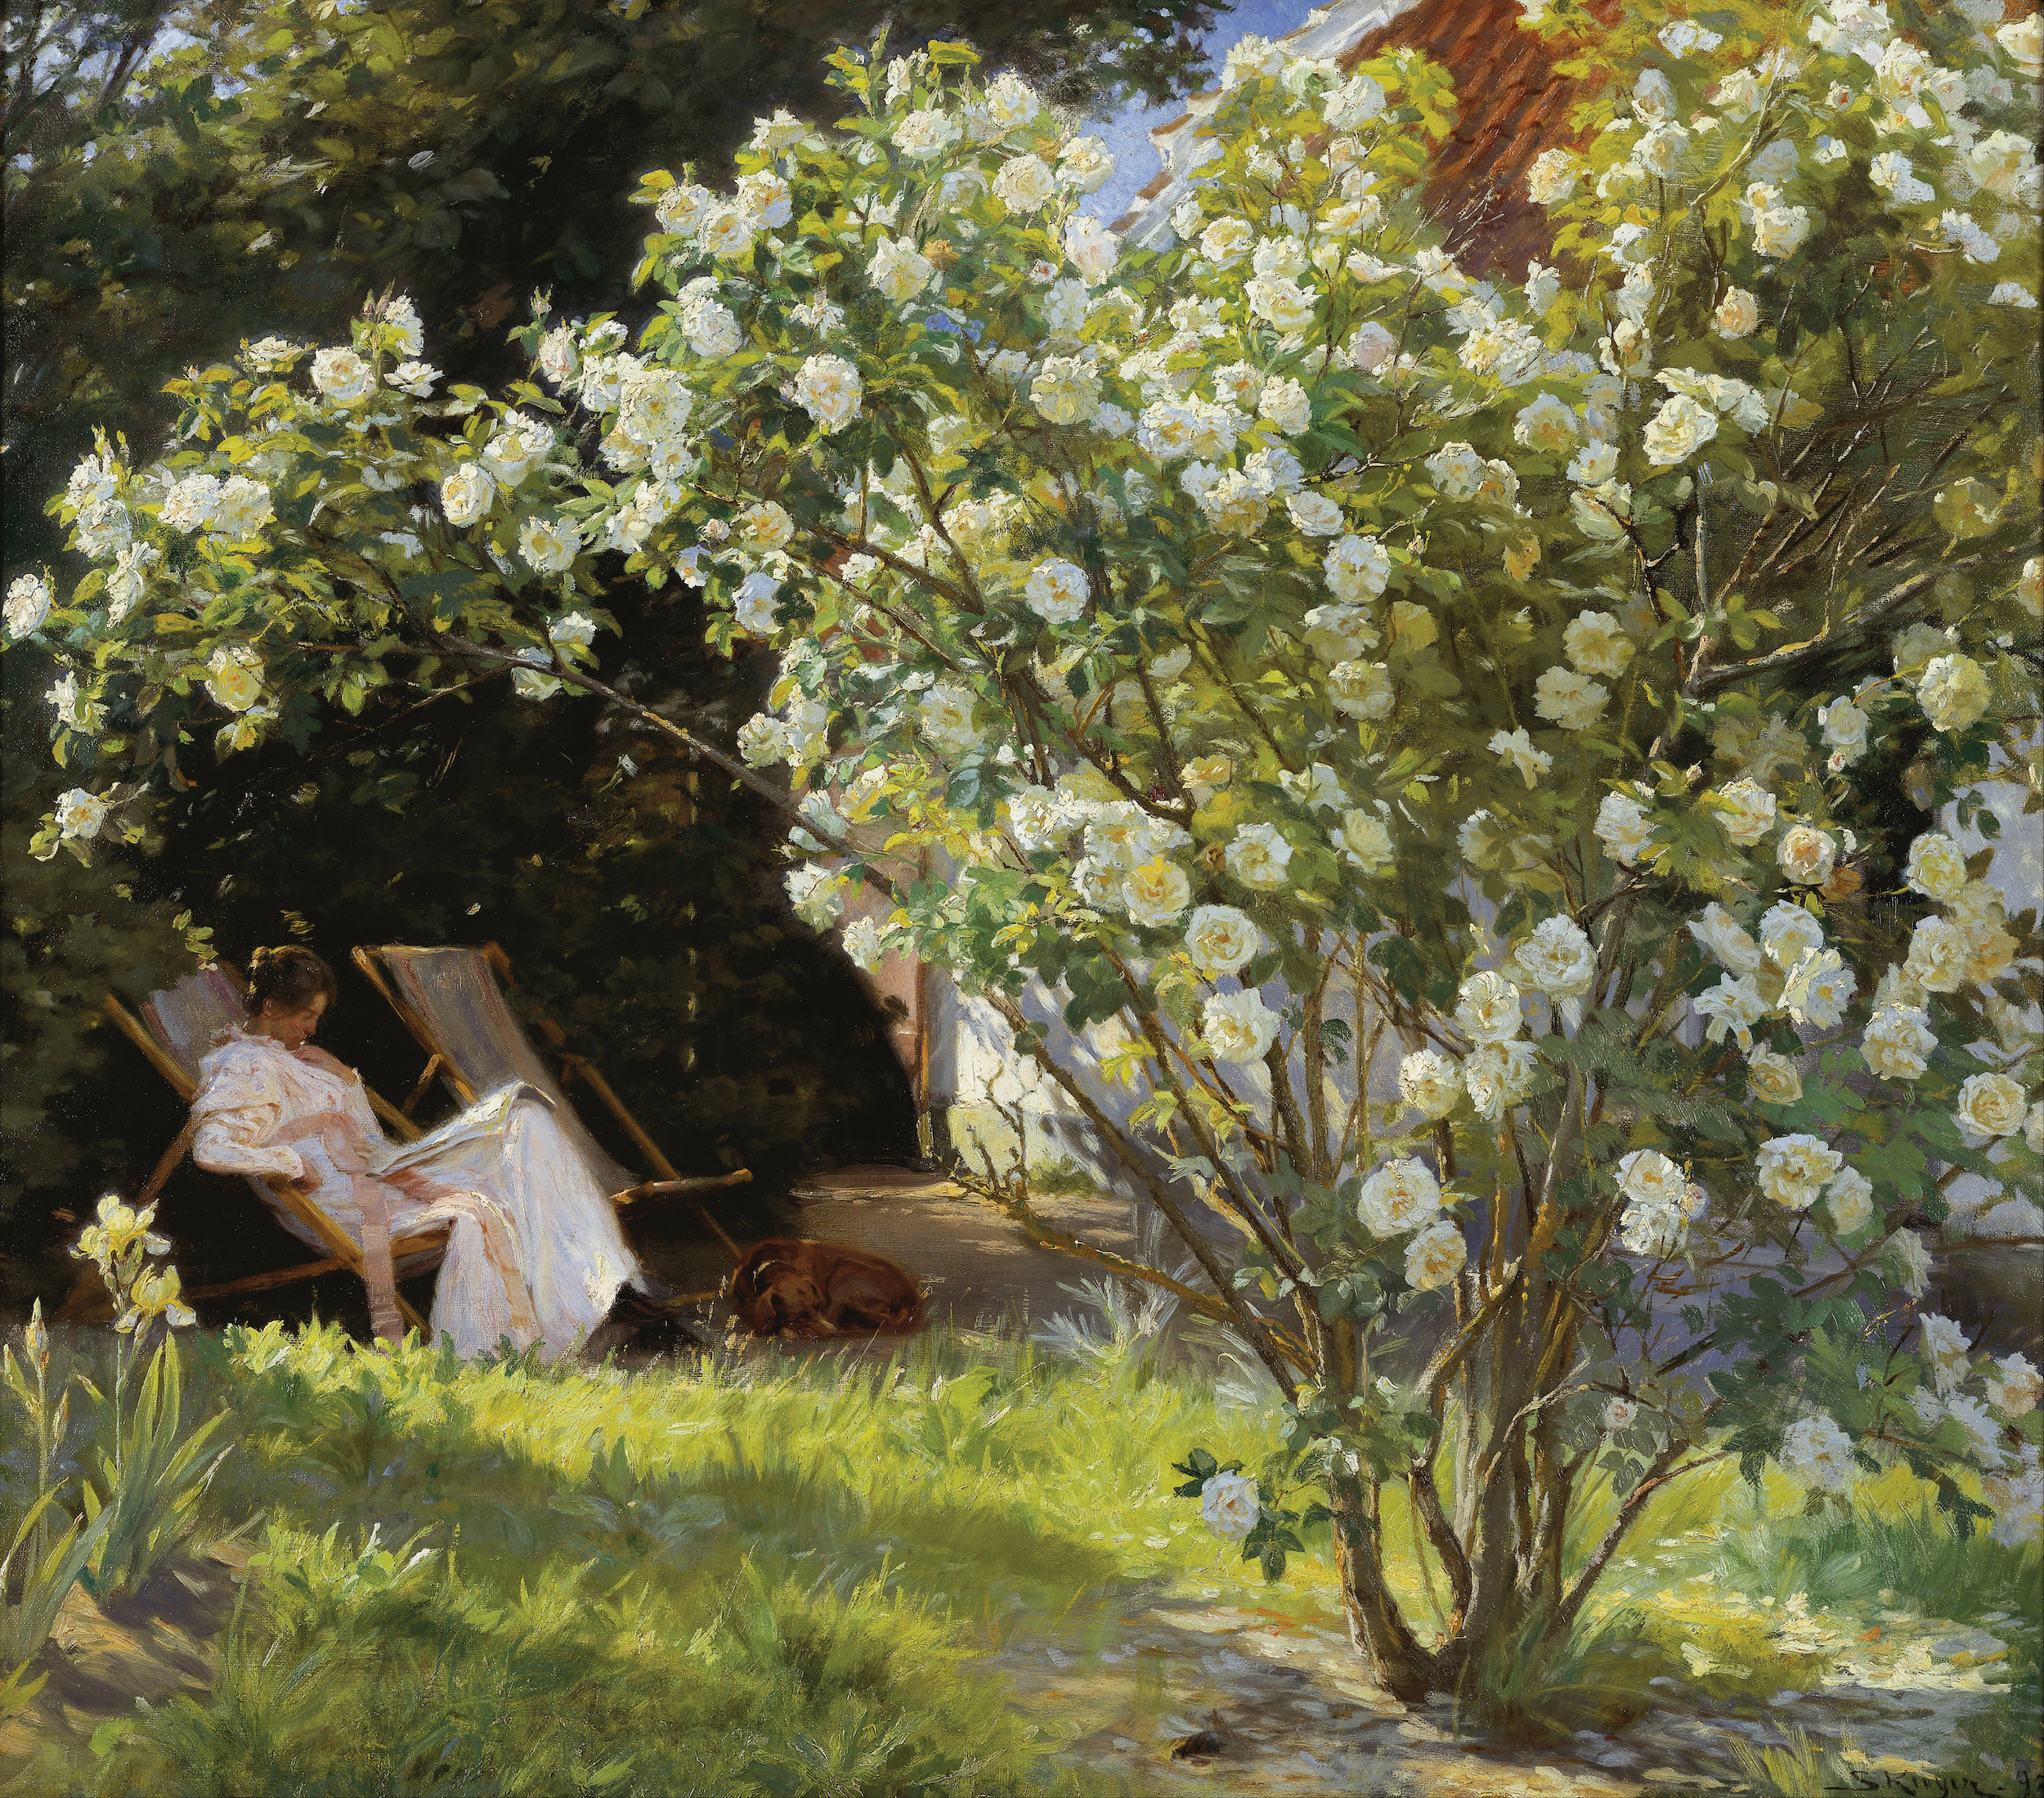 玫瑰。玛丽·柯罗耶坐在本德森太太宅邸花园的帆布躺椅上 by 佩德·塞韦林 克罗耶 - 1893 - 76.5 x 67.5 cm 